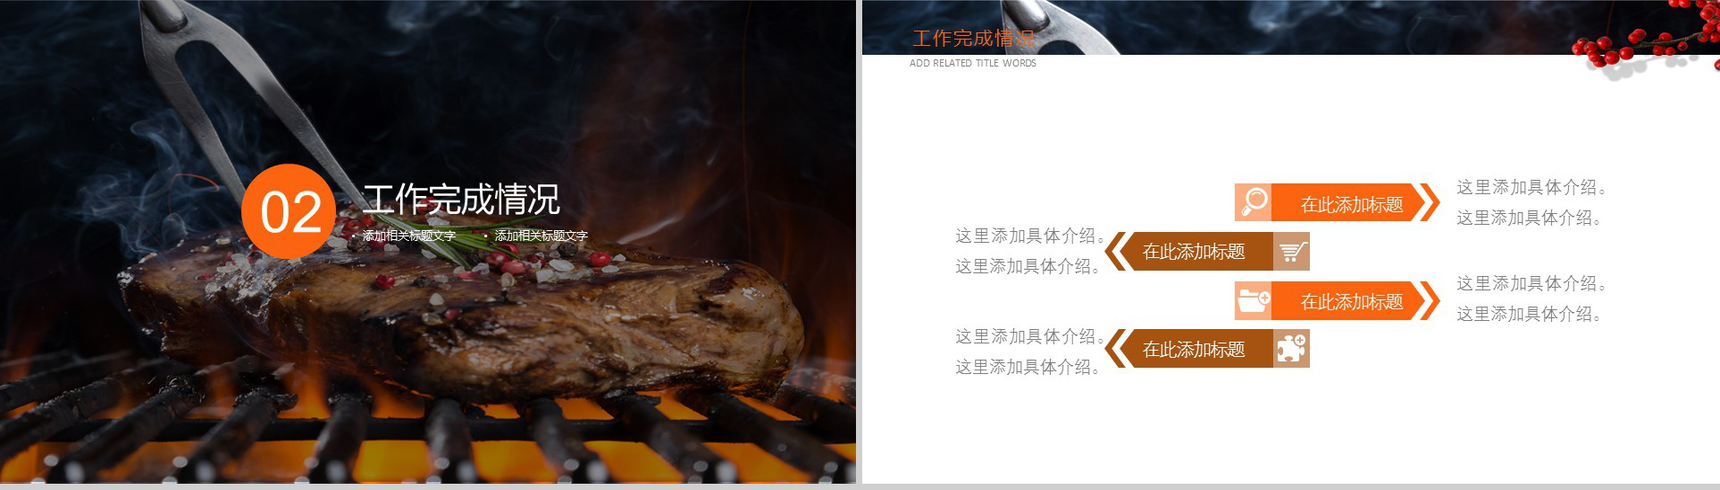 精美大气美食文化烤肉宣传介绍年终汇报PPT模板-5